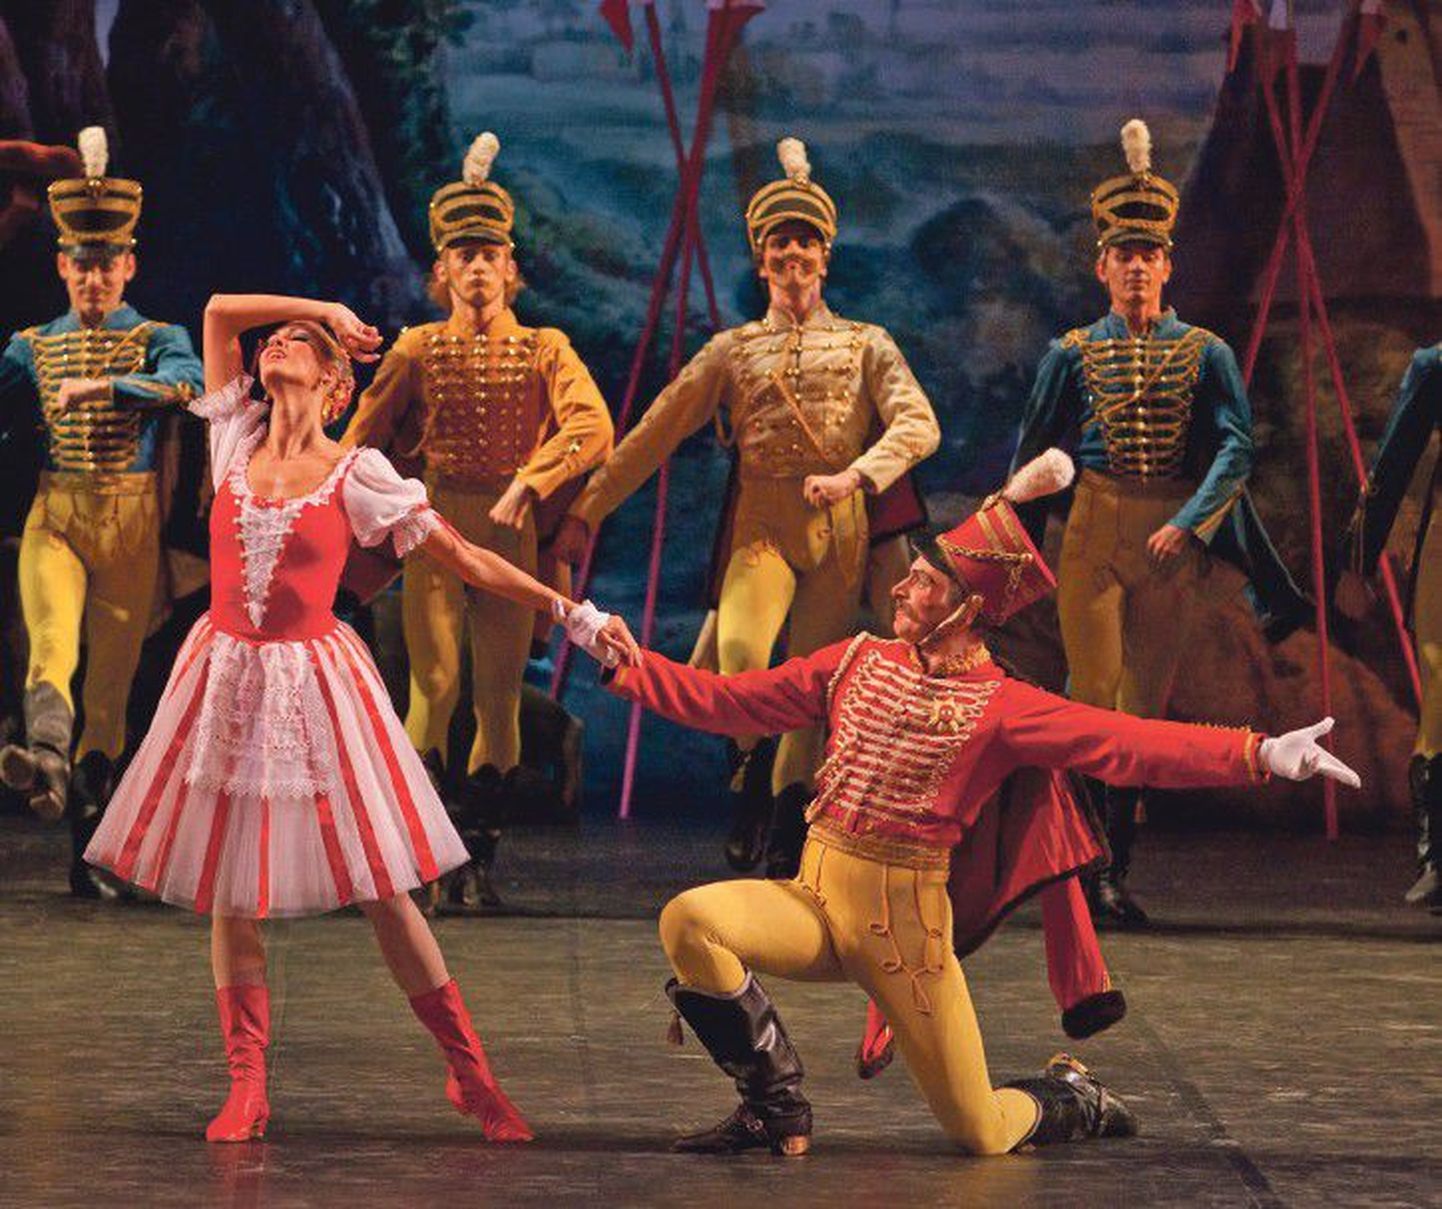 Праздничный и легкий балет «Привал кавалерии» на музыку Ивана Армс­геймера Михайловский театр показал на вечере классического балета.